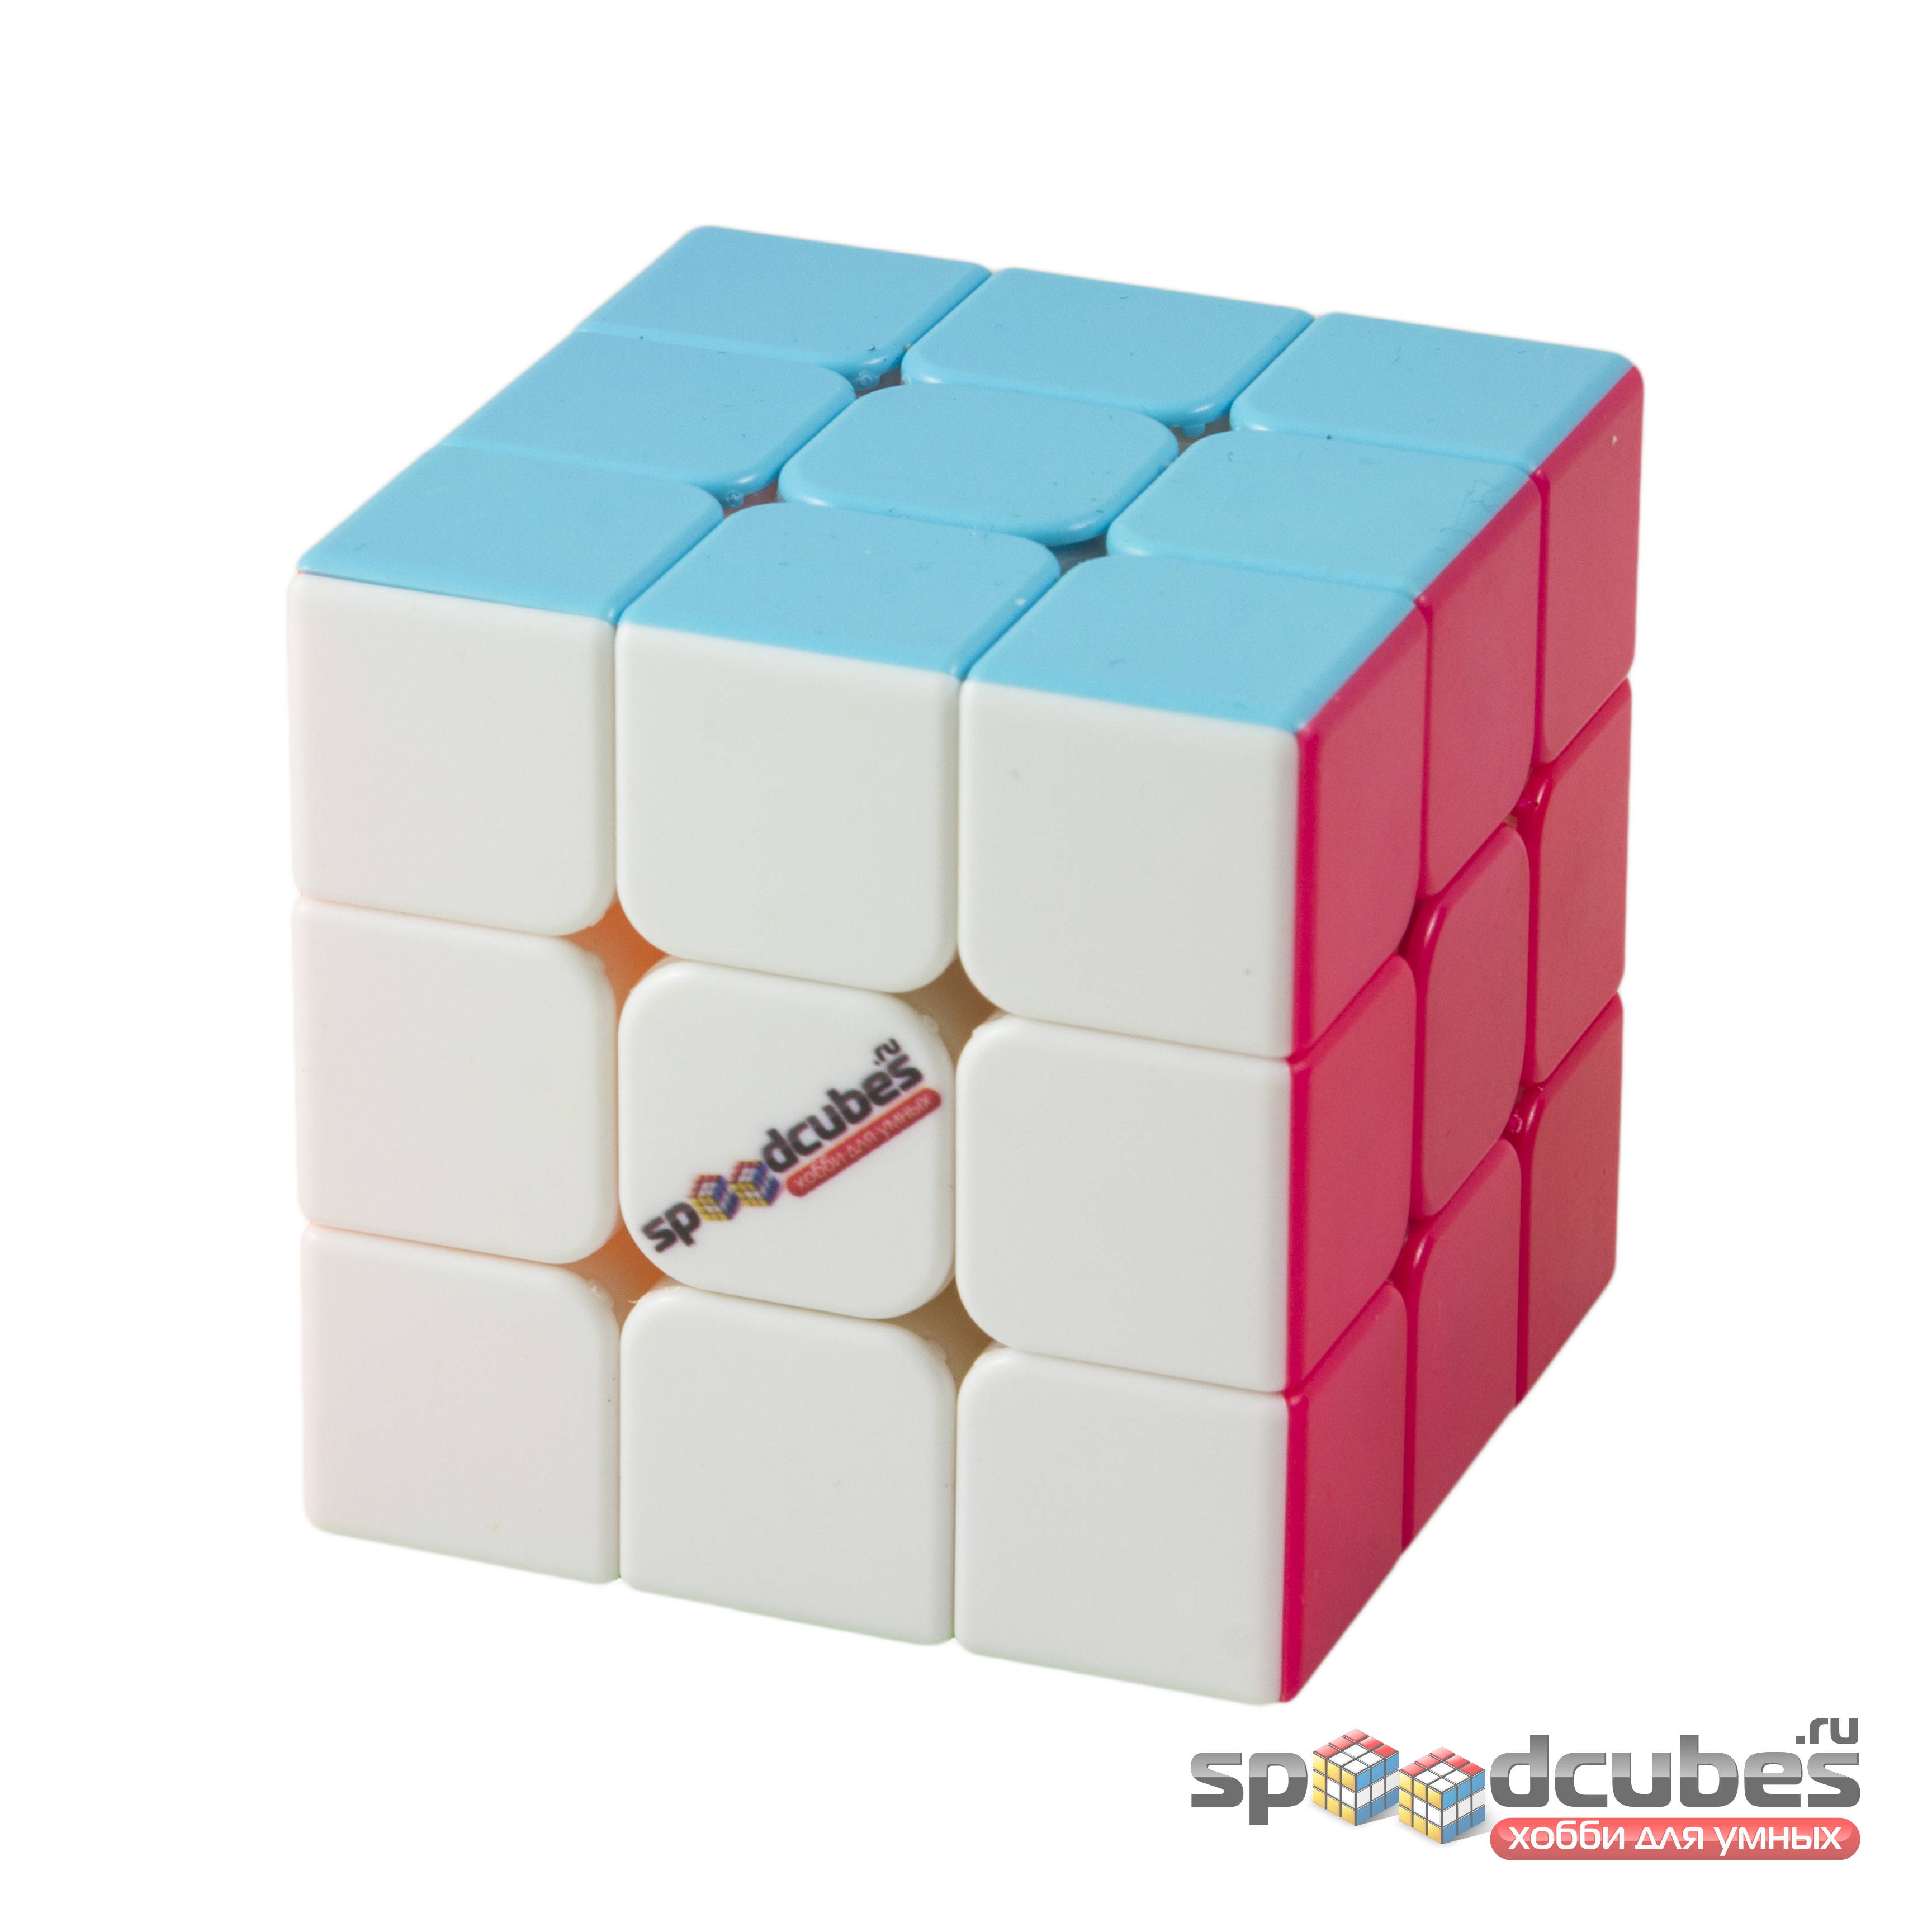 SPEEDCUBES 3x3x3 фирменный куб "Спидкуб"